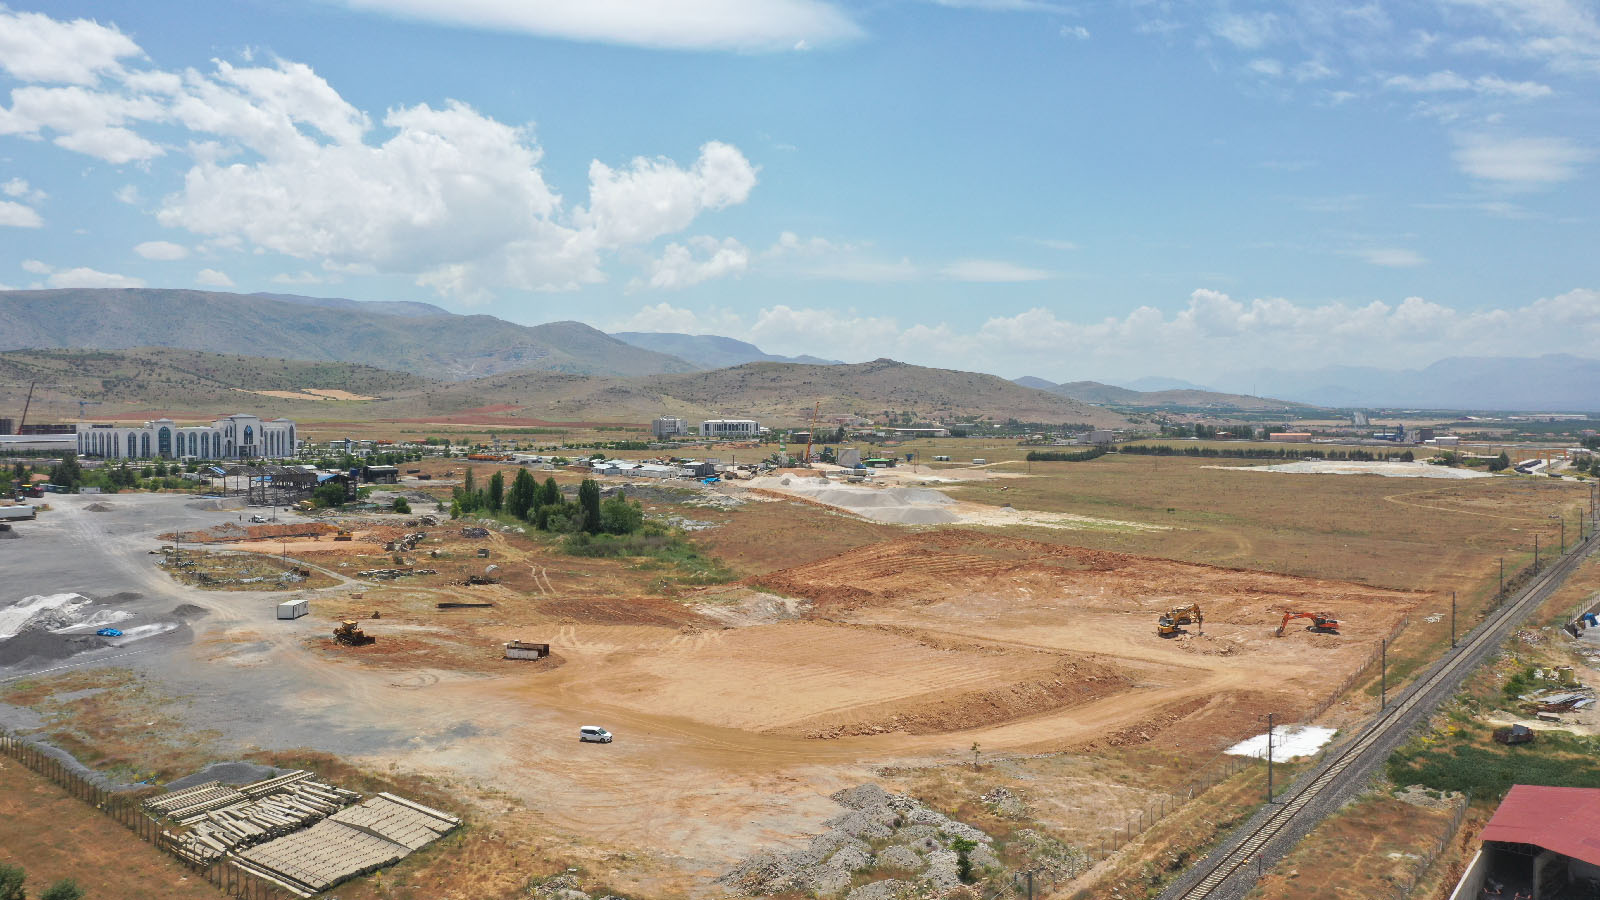 Başkan Gürkan' MESTON Şirketimiz Aracılığıyla Şehrimize Yeni Bir Beton Santral Kazandırıyoruz'